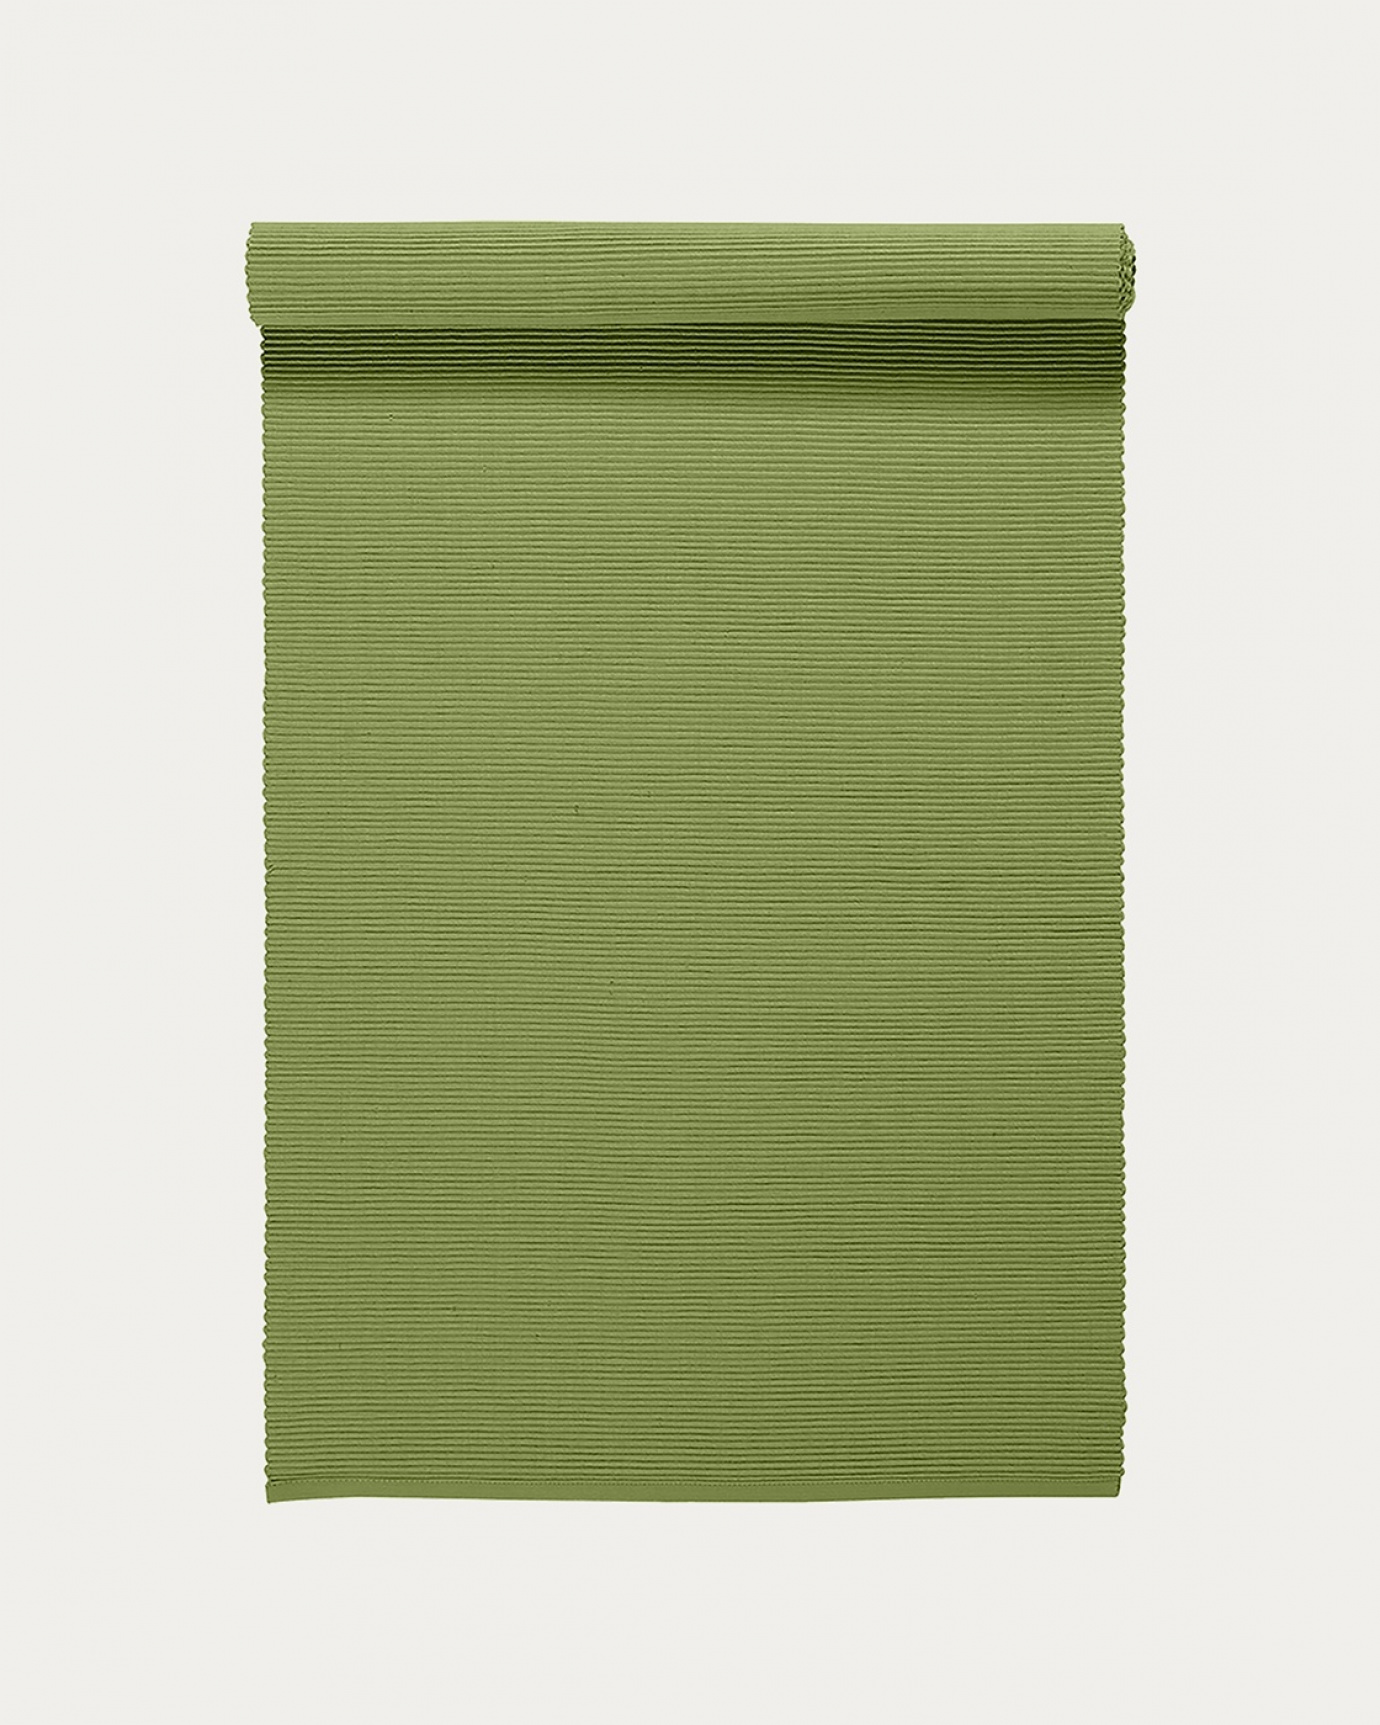 Image du produit chemin de table UNI vert mousse en coton doux de qualité côtelée de LINUM DESIGN. Taille 45 x 150 cm.